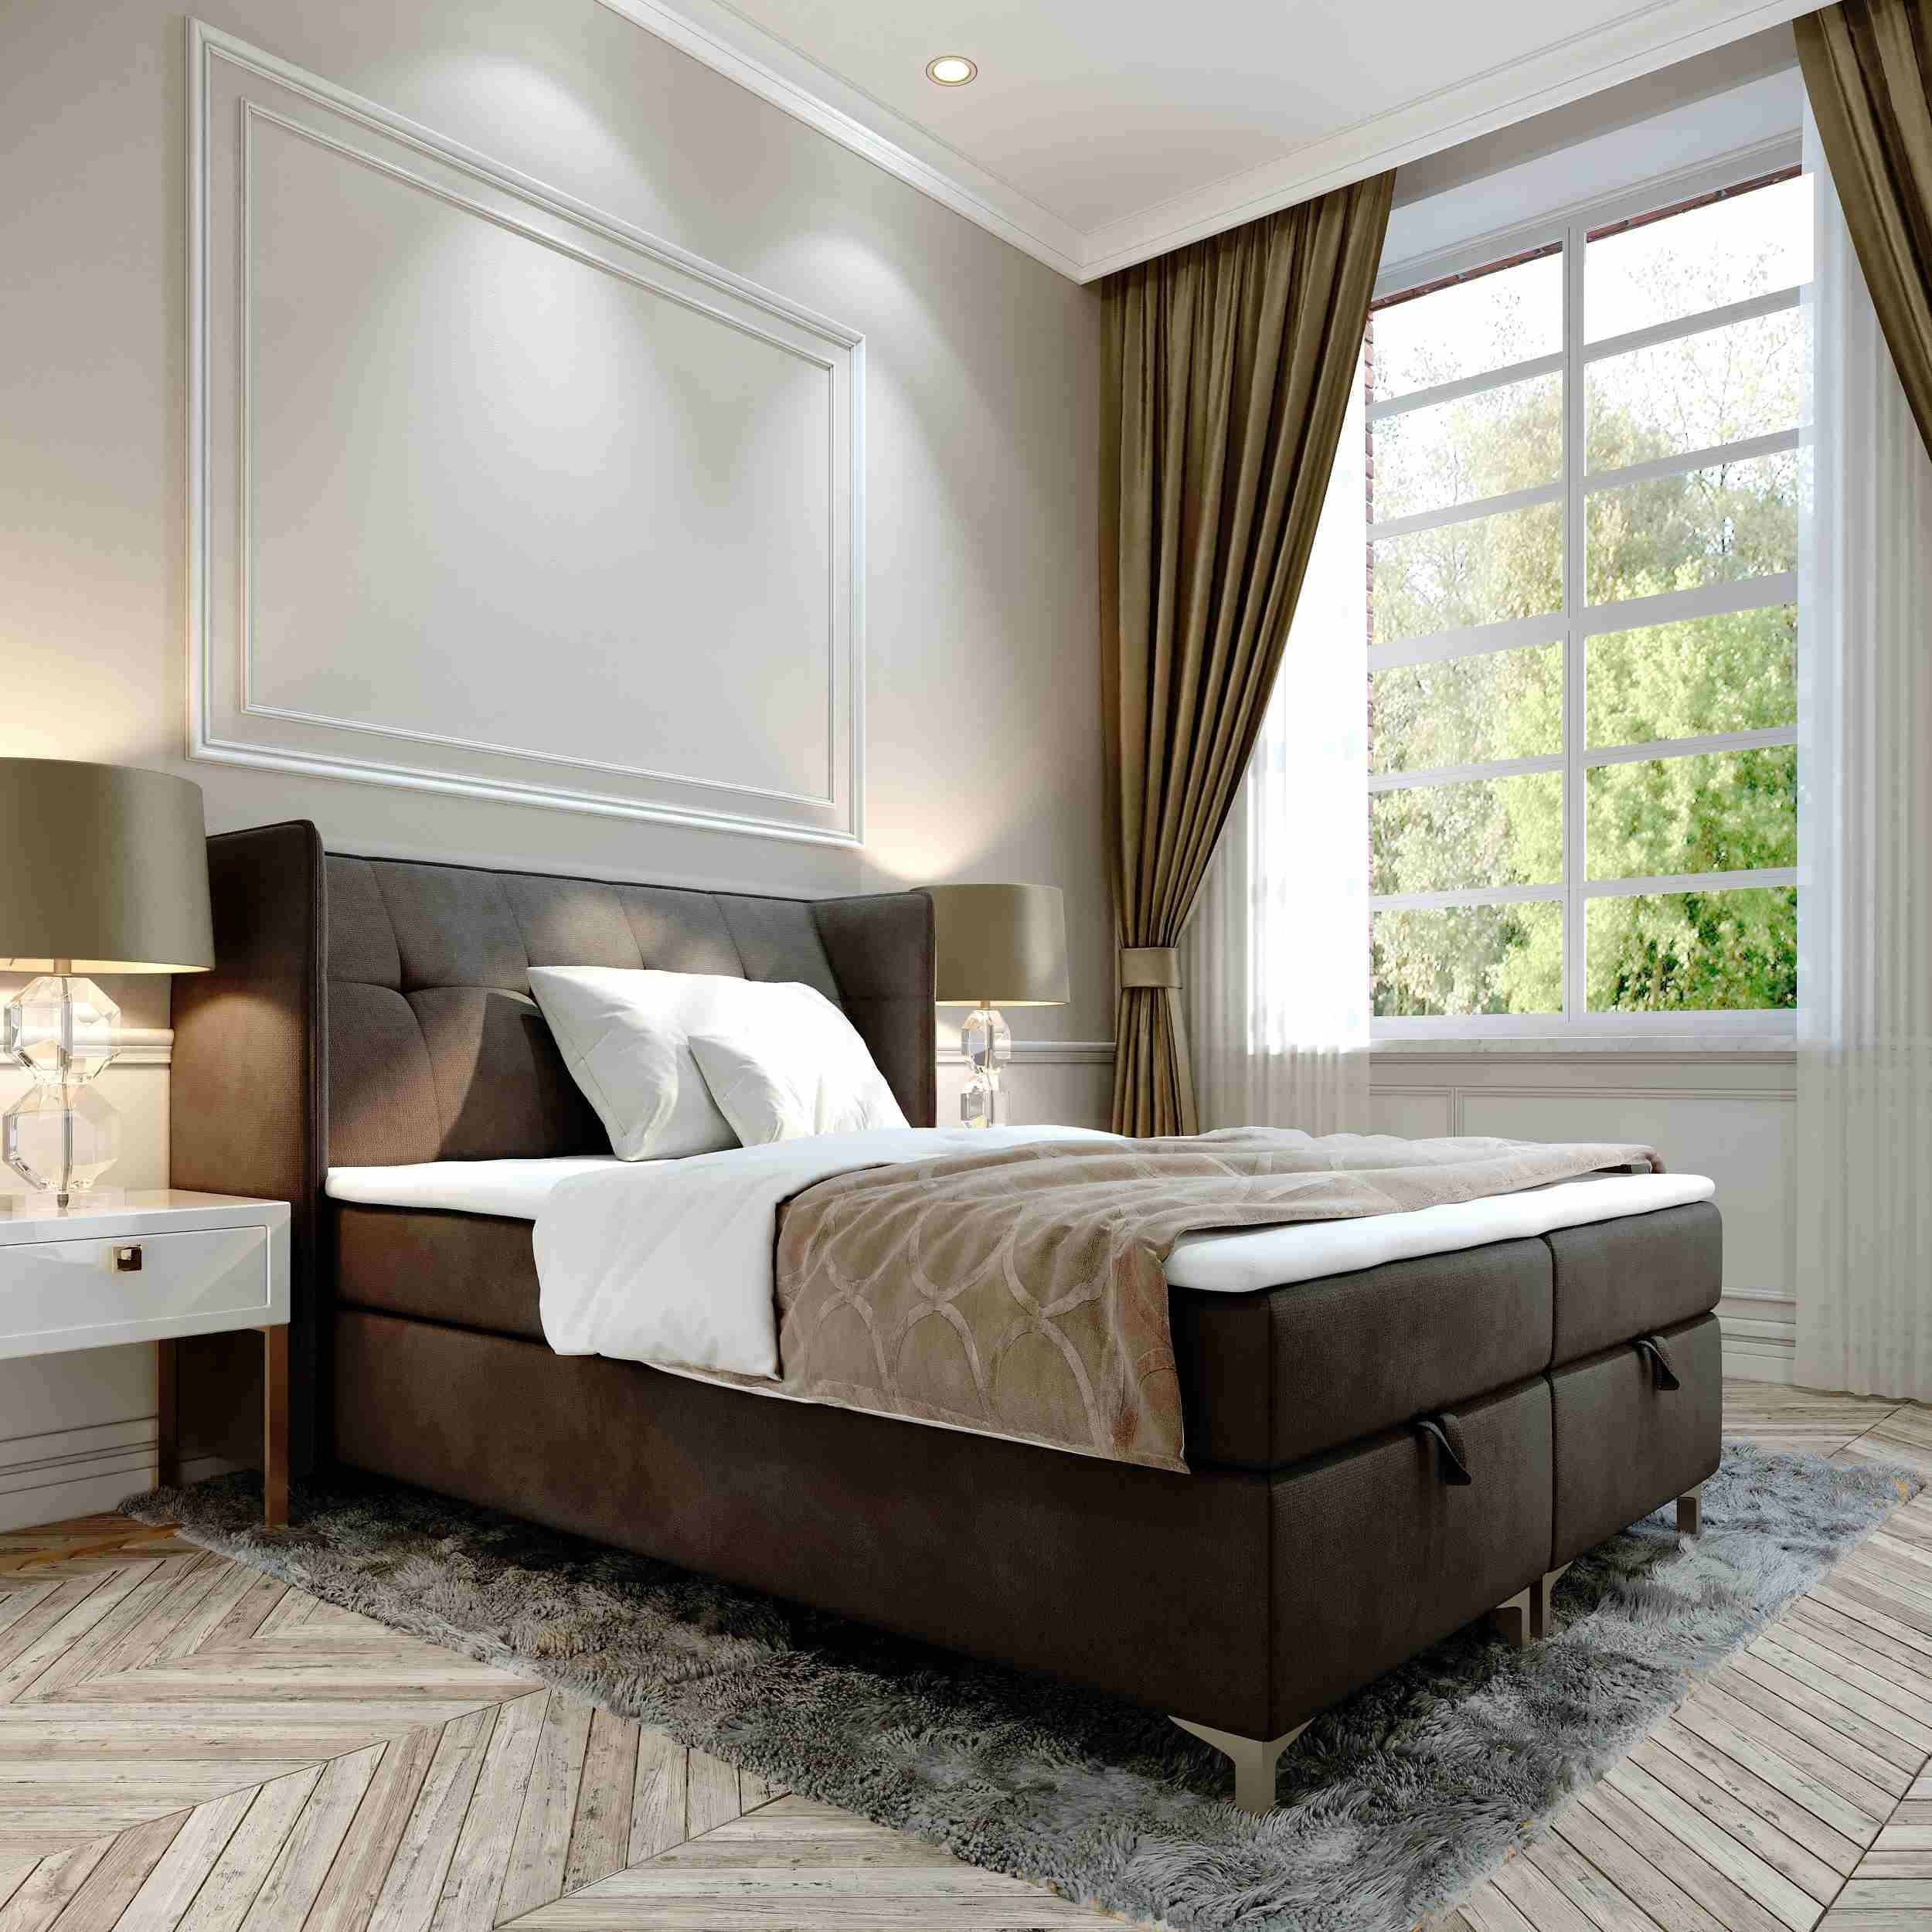 Furnix Polsterbett TOLIE 140,160, 180, 200x 200 cm Bett mit Bettkasten und Topper, wahlweise in 5 Größen und 7 Farben Braun